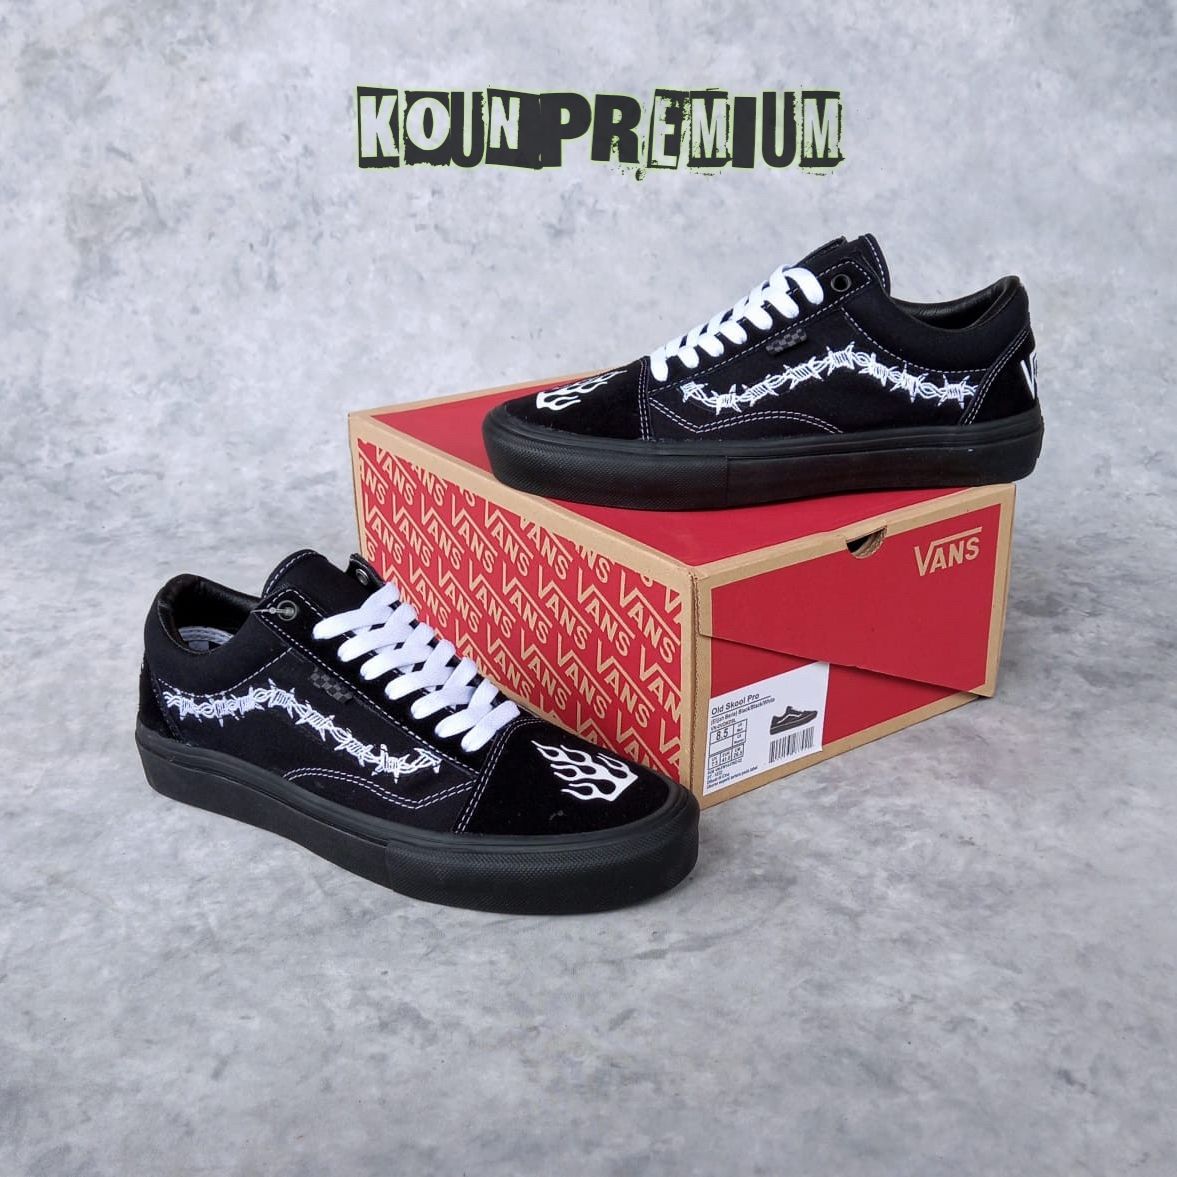 Sepatu Nike Air Vapormax LV Supreme New Premium Lengkap Sneakers Branded  Murah di Jakarta Selatan 